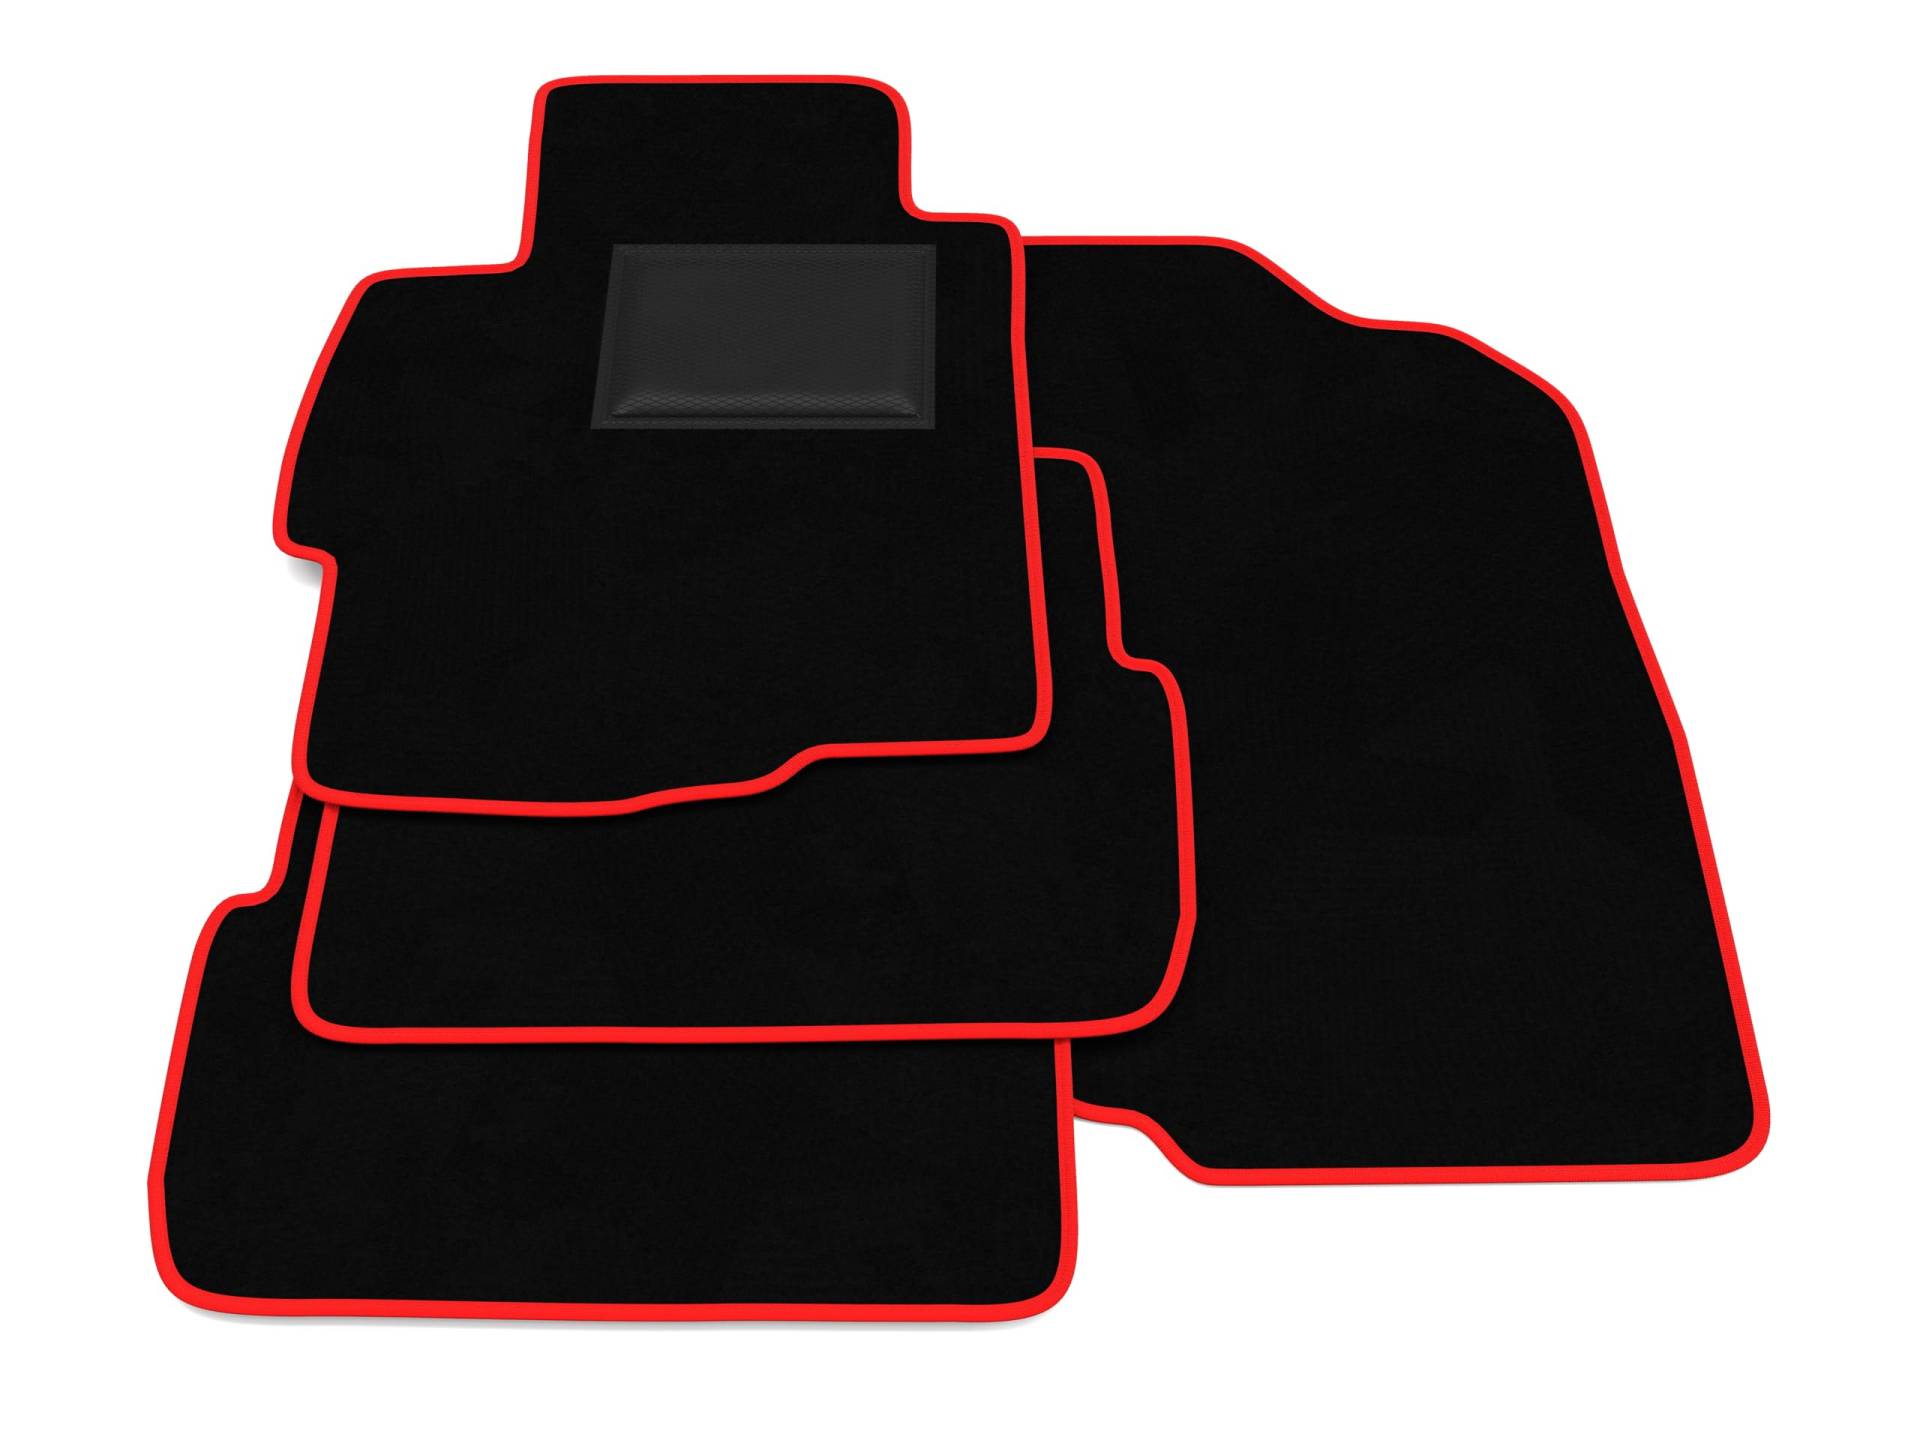 Fußmatten kompatibel mit Mitsubishi Lancer Evo 10 ab 2007 Roter Rand Fußmatten Set Fußmatten Set Velours Autoteppich von Generico